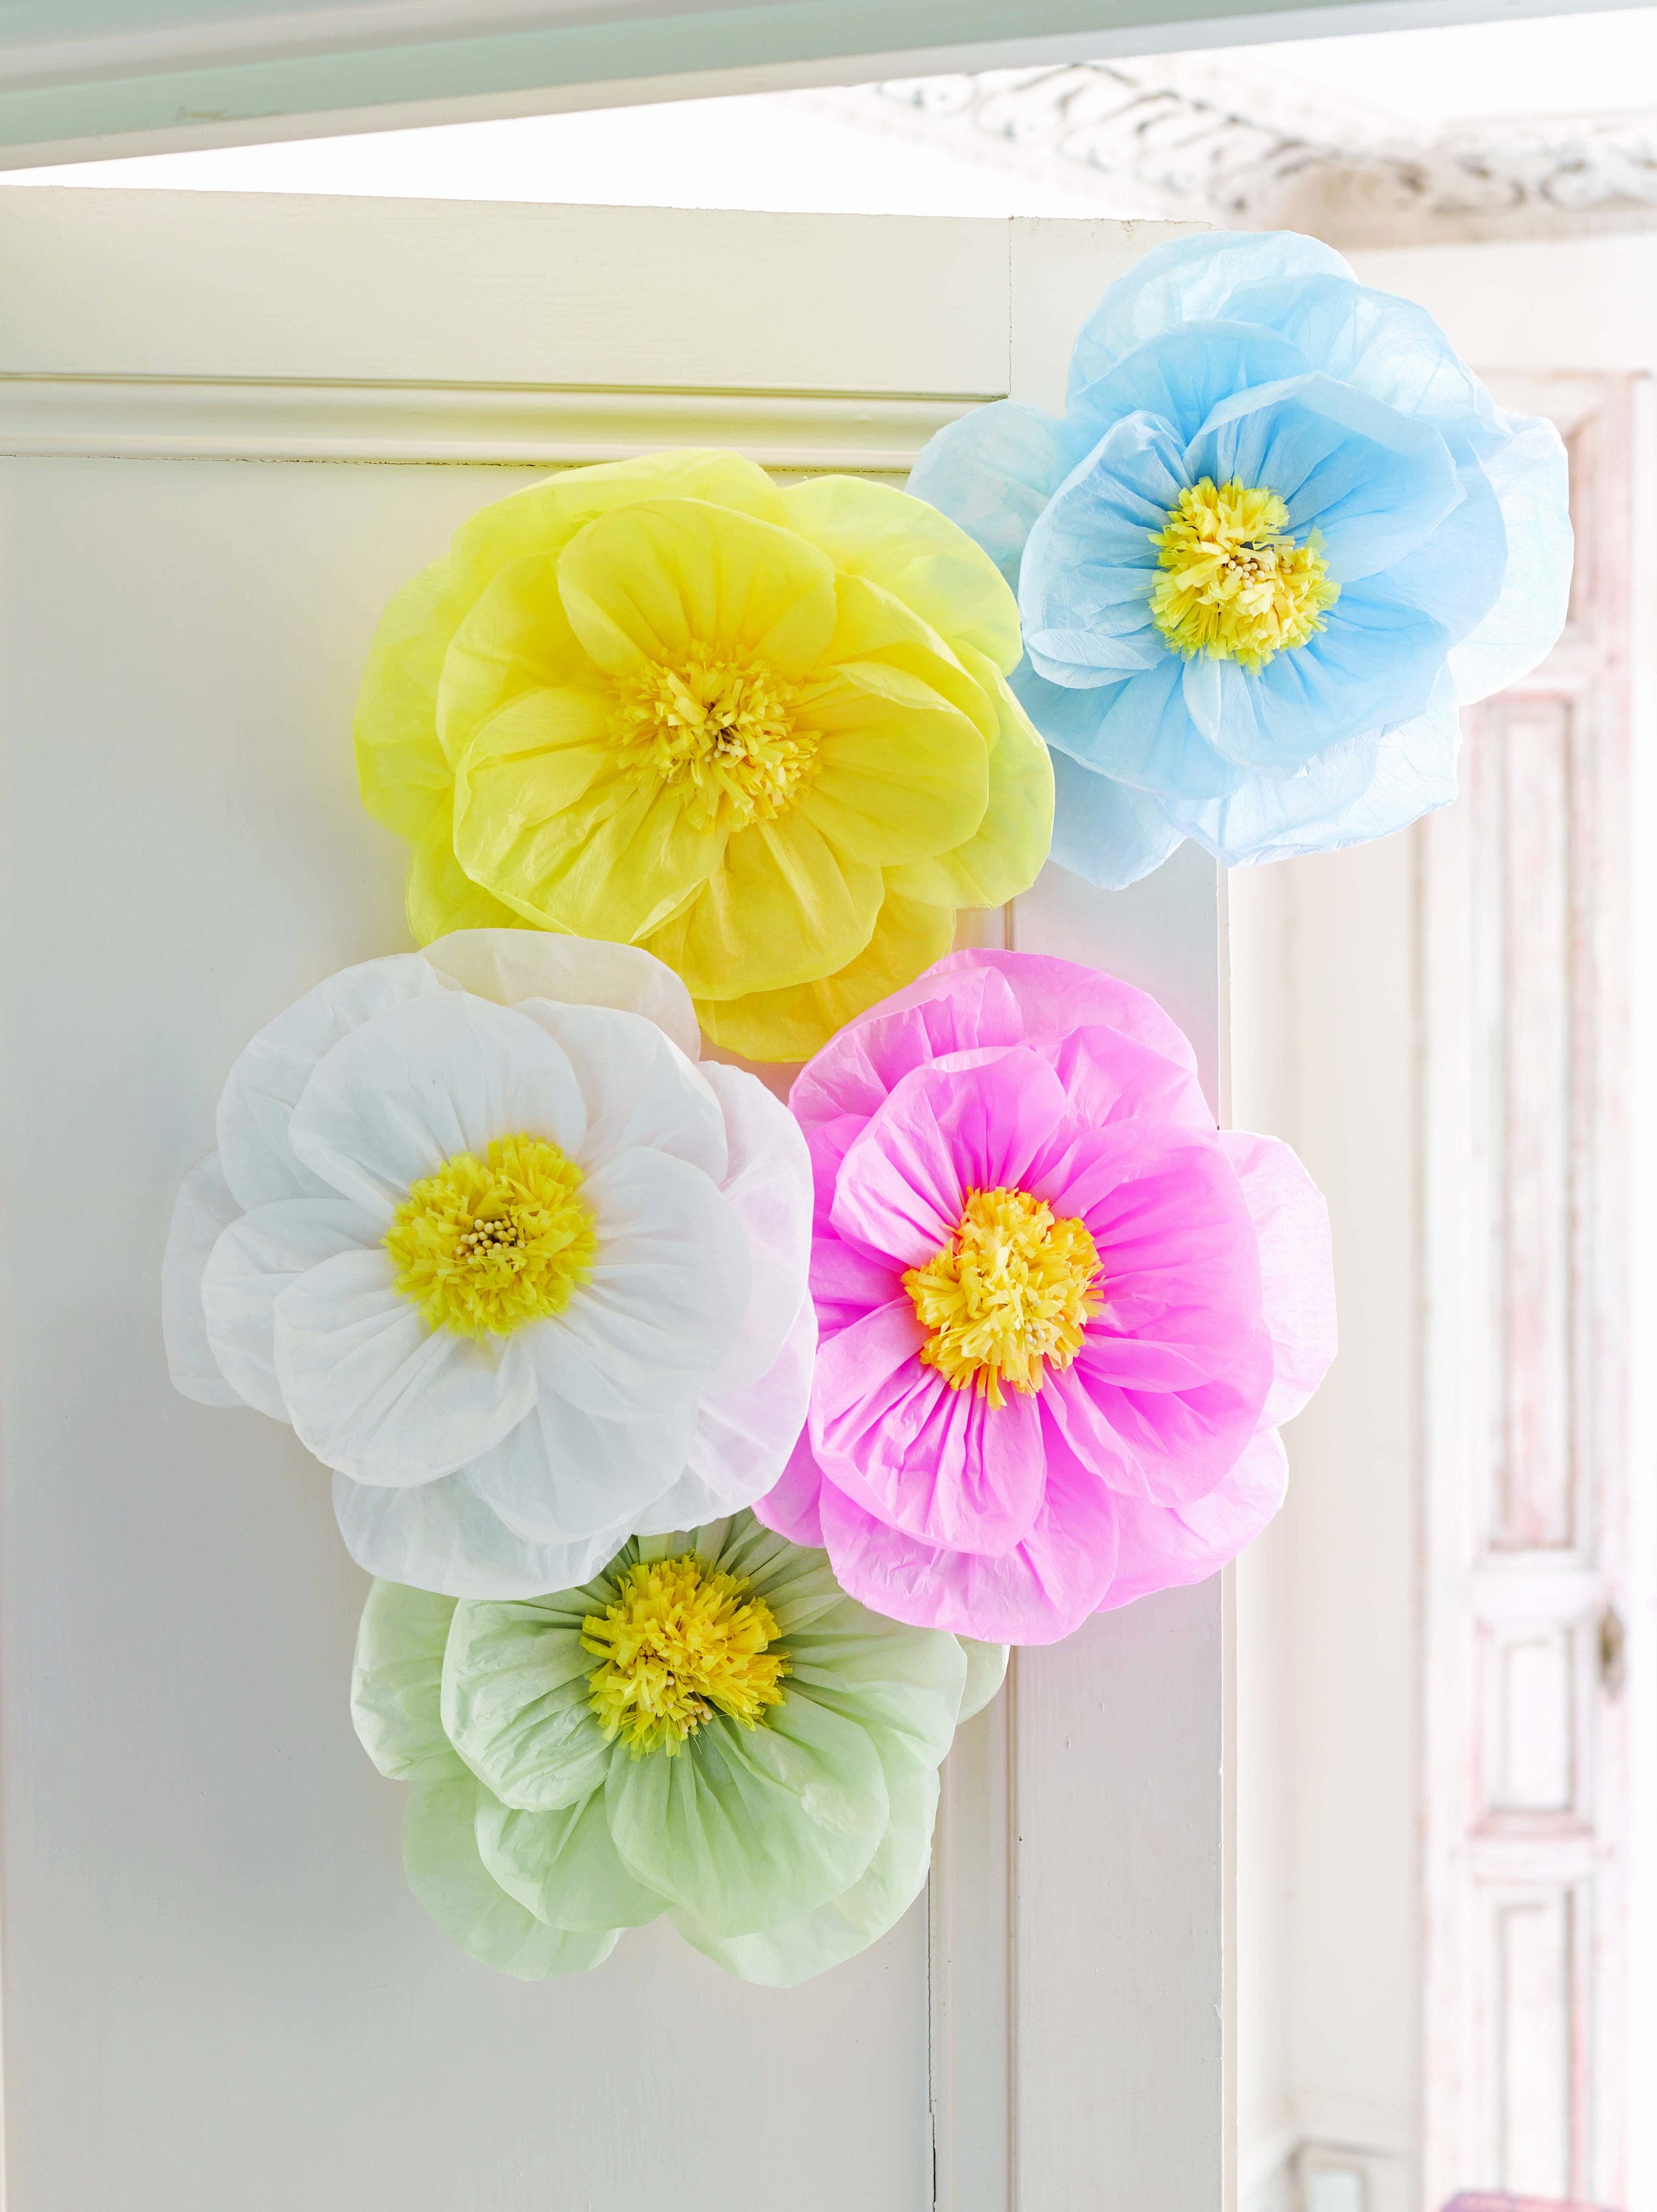 DIY Tissue Flower, Paper Flower, Tissue Paper Flower For Birthday